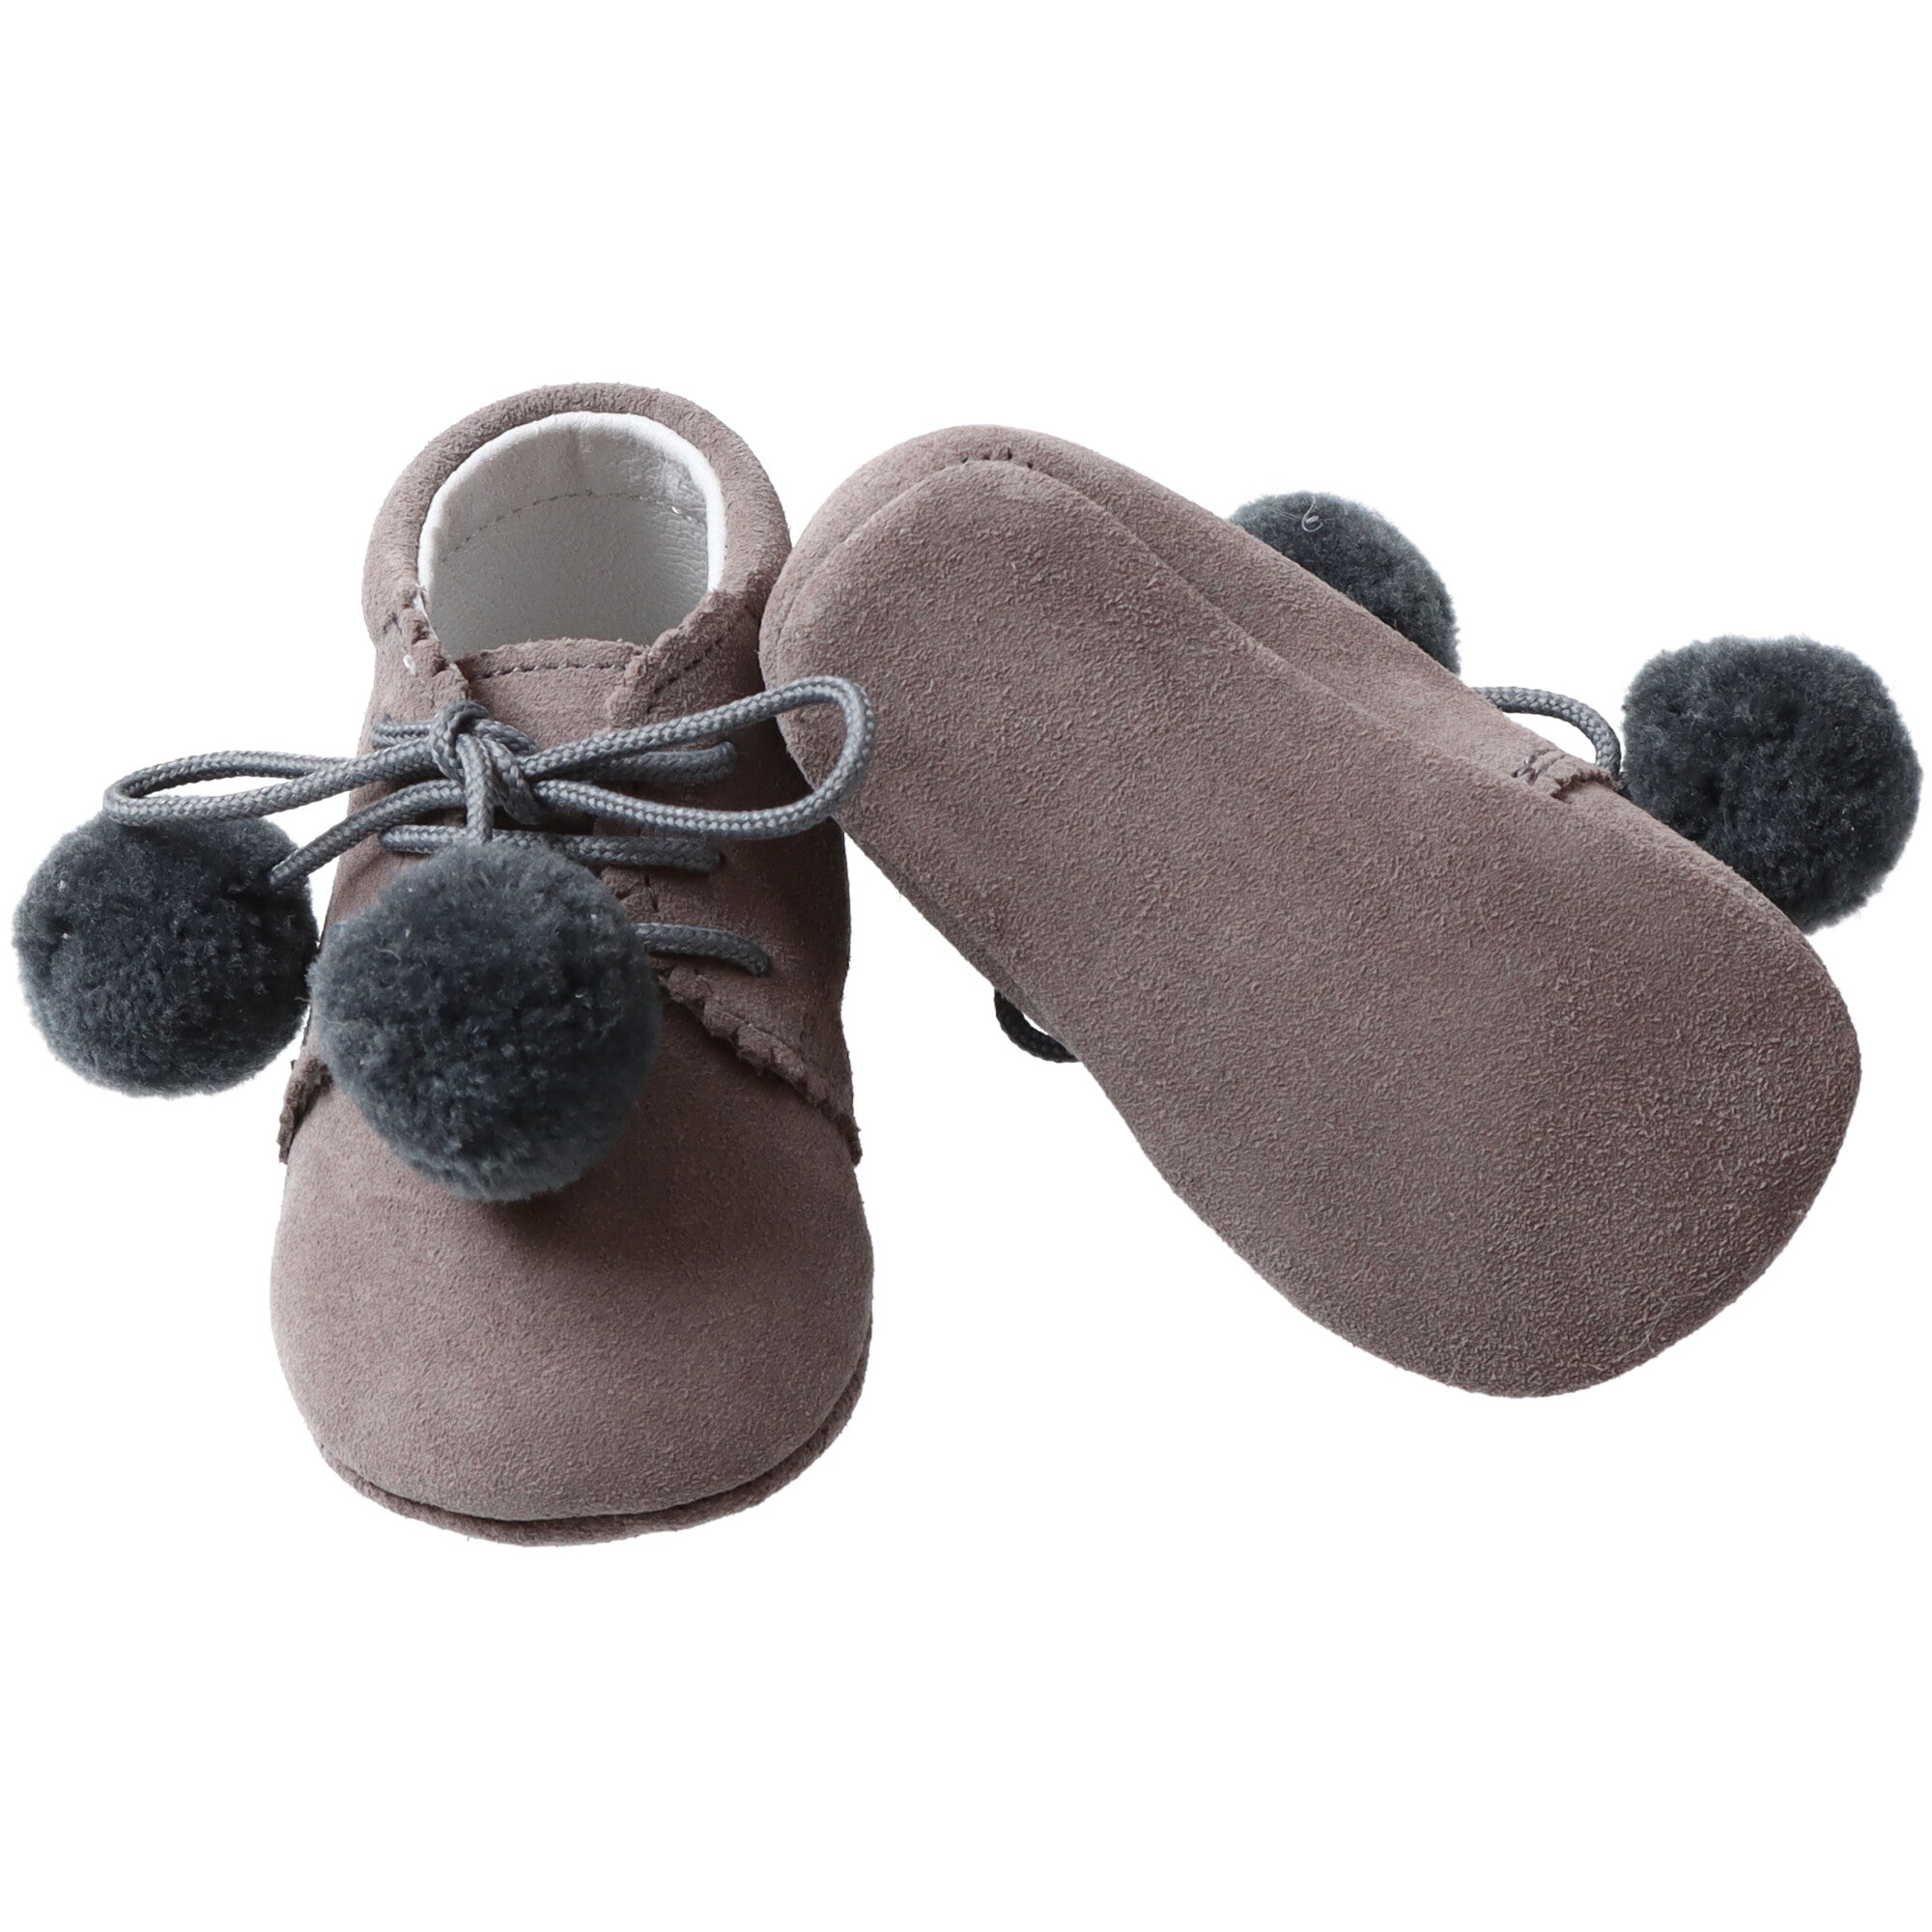 scarpe-allacciate-in-camoscio-per-neonati